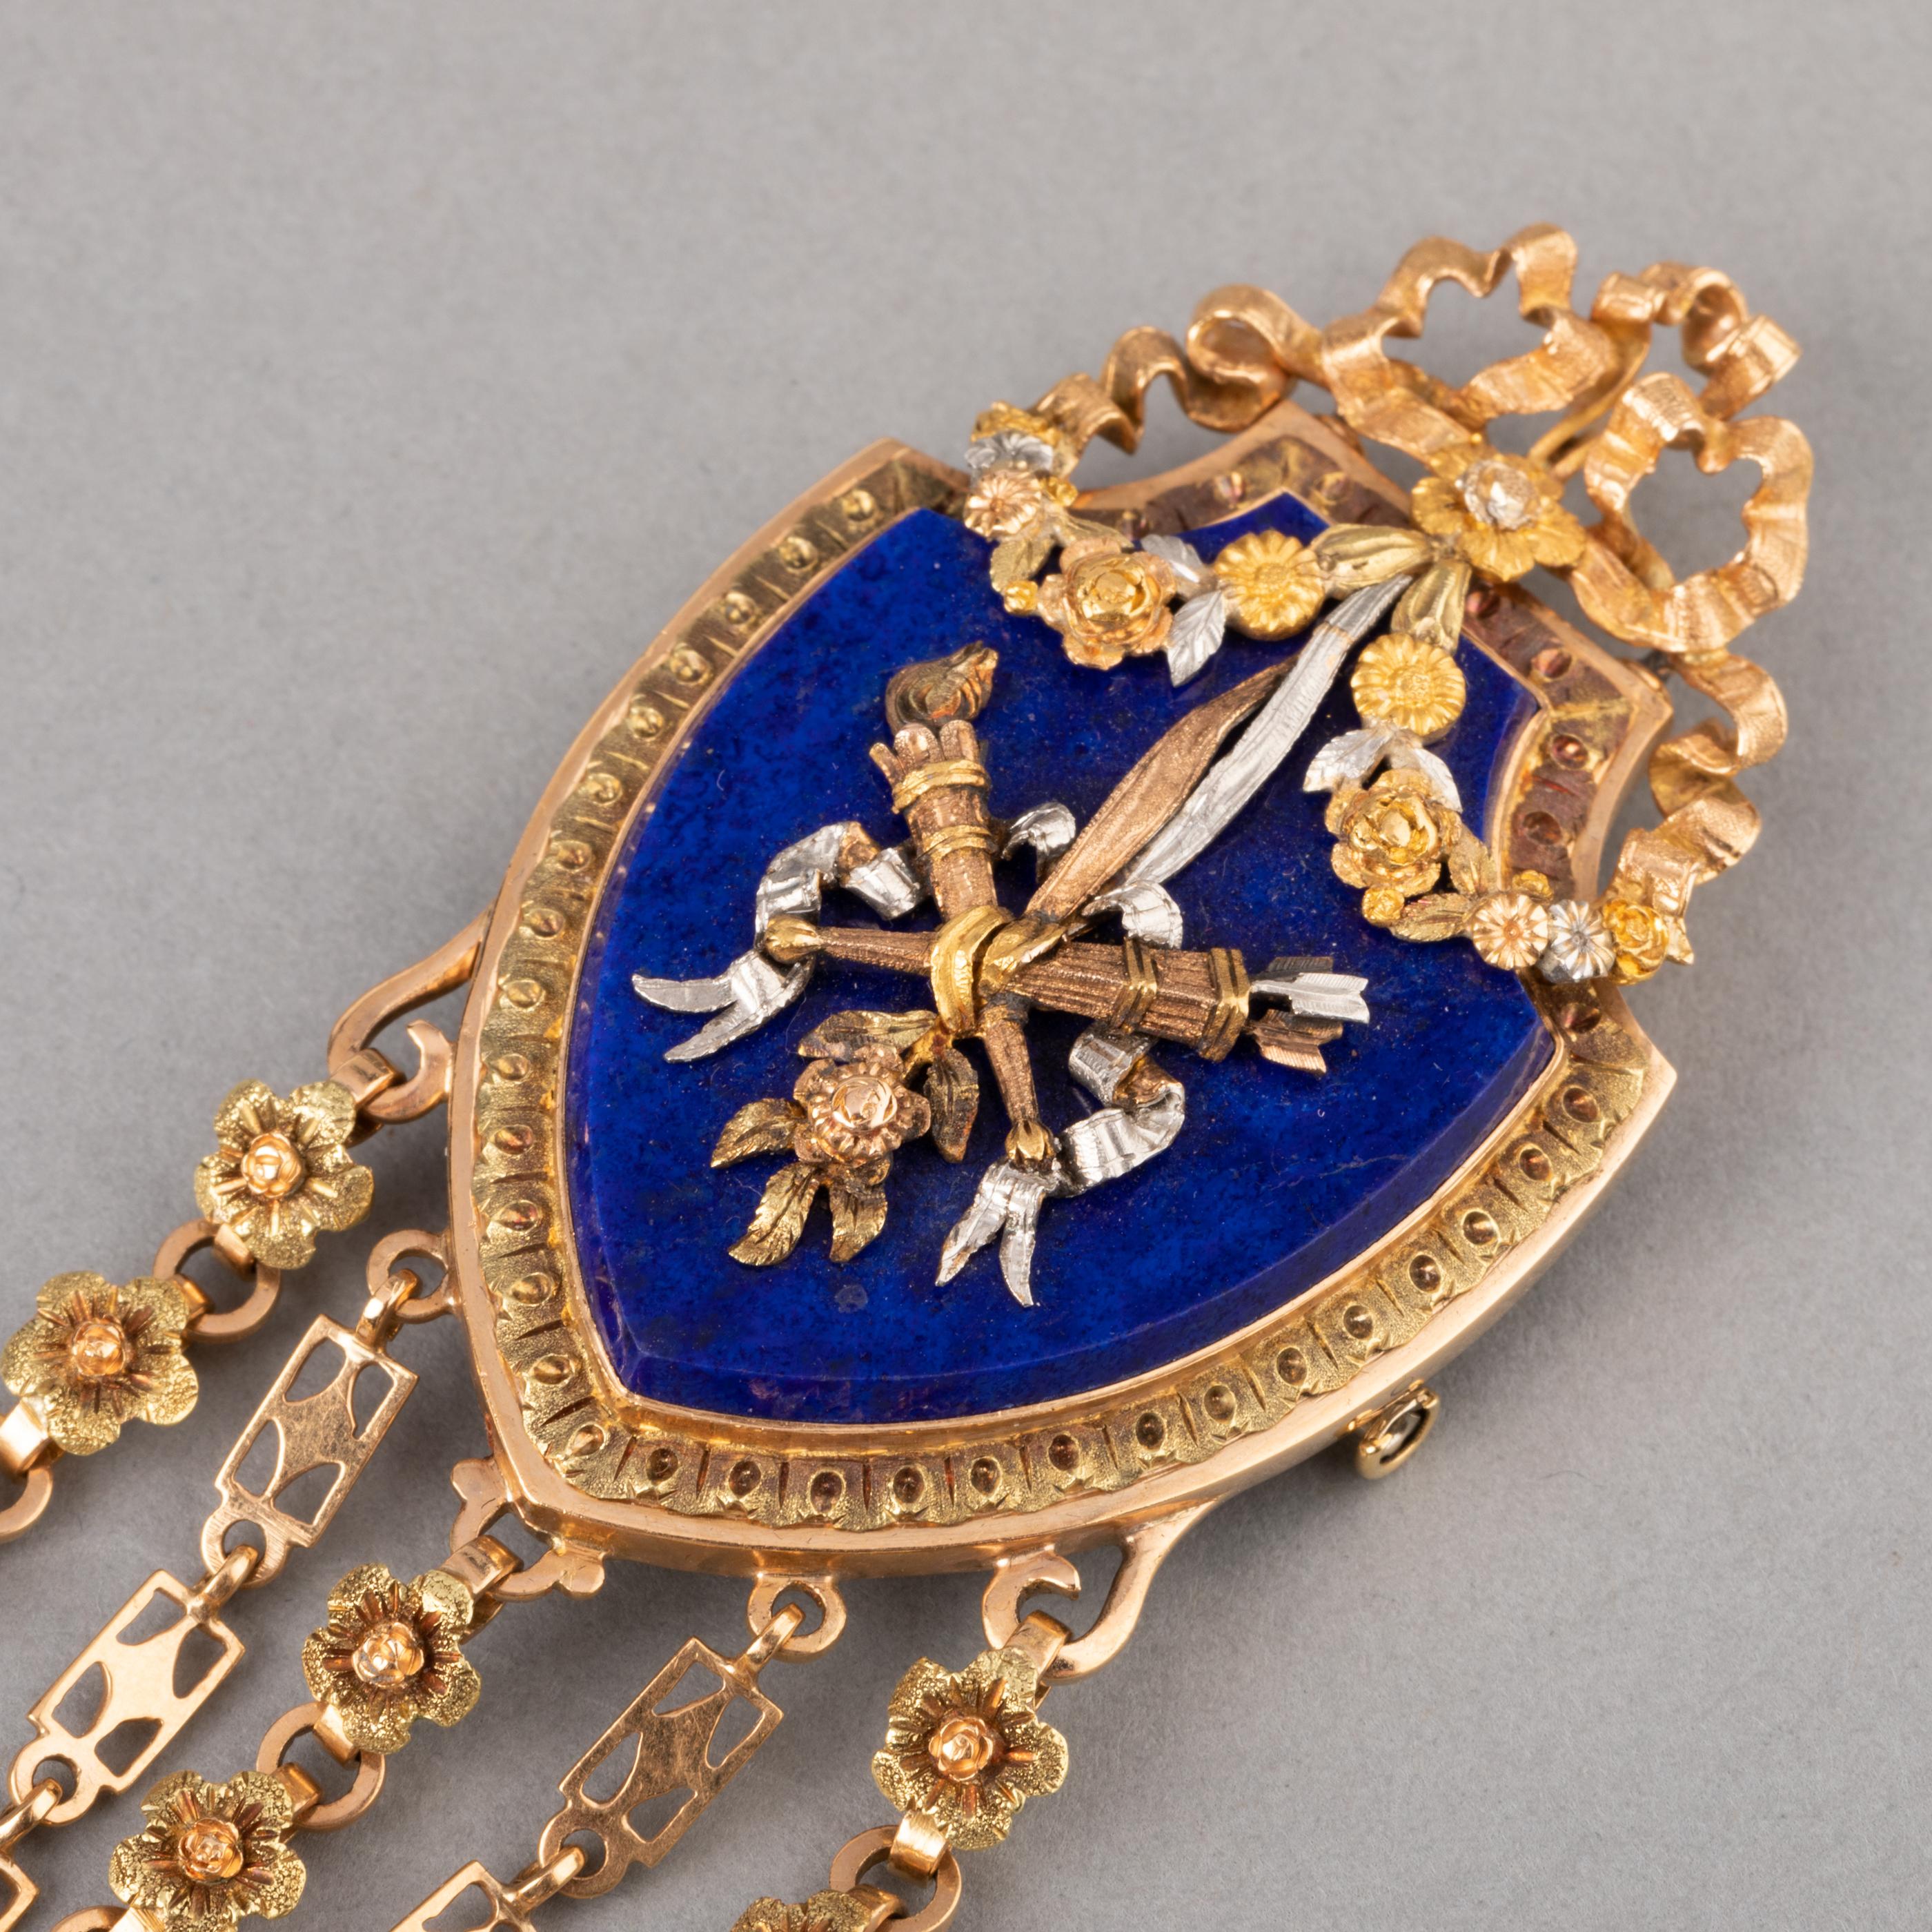 Gold and Lapis Lazuli Antique Châtelaine Brooch by Le Roy & Fils Paris 1